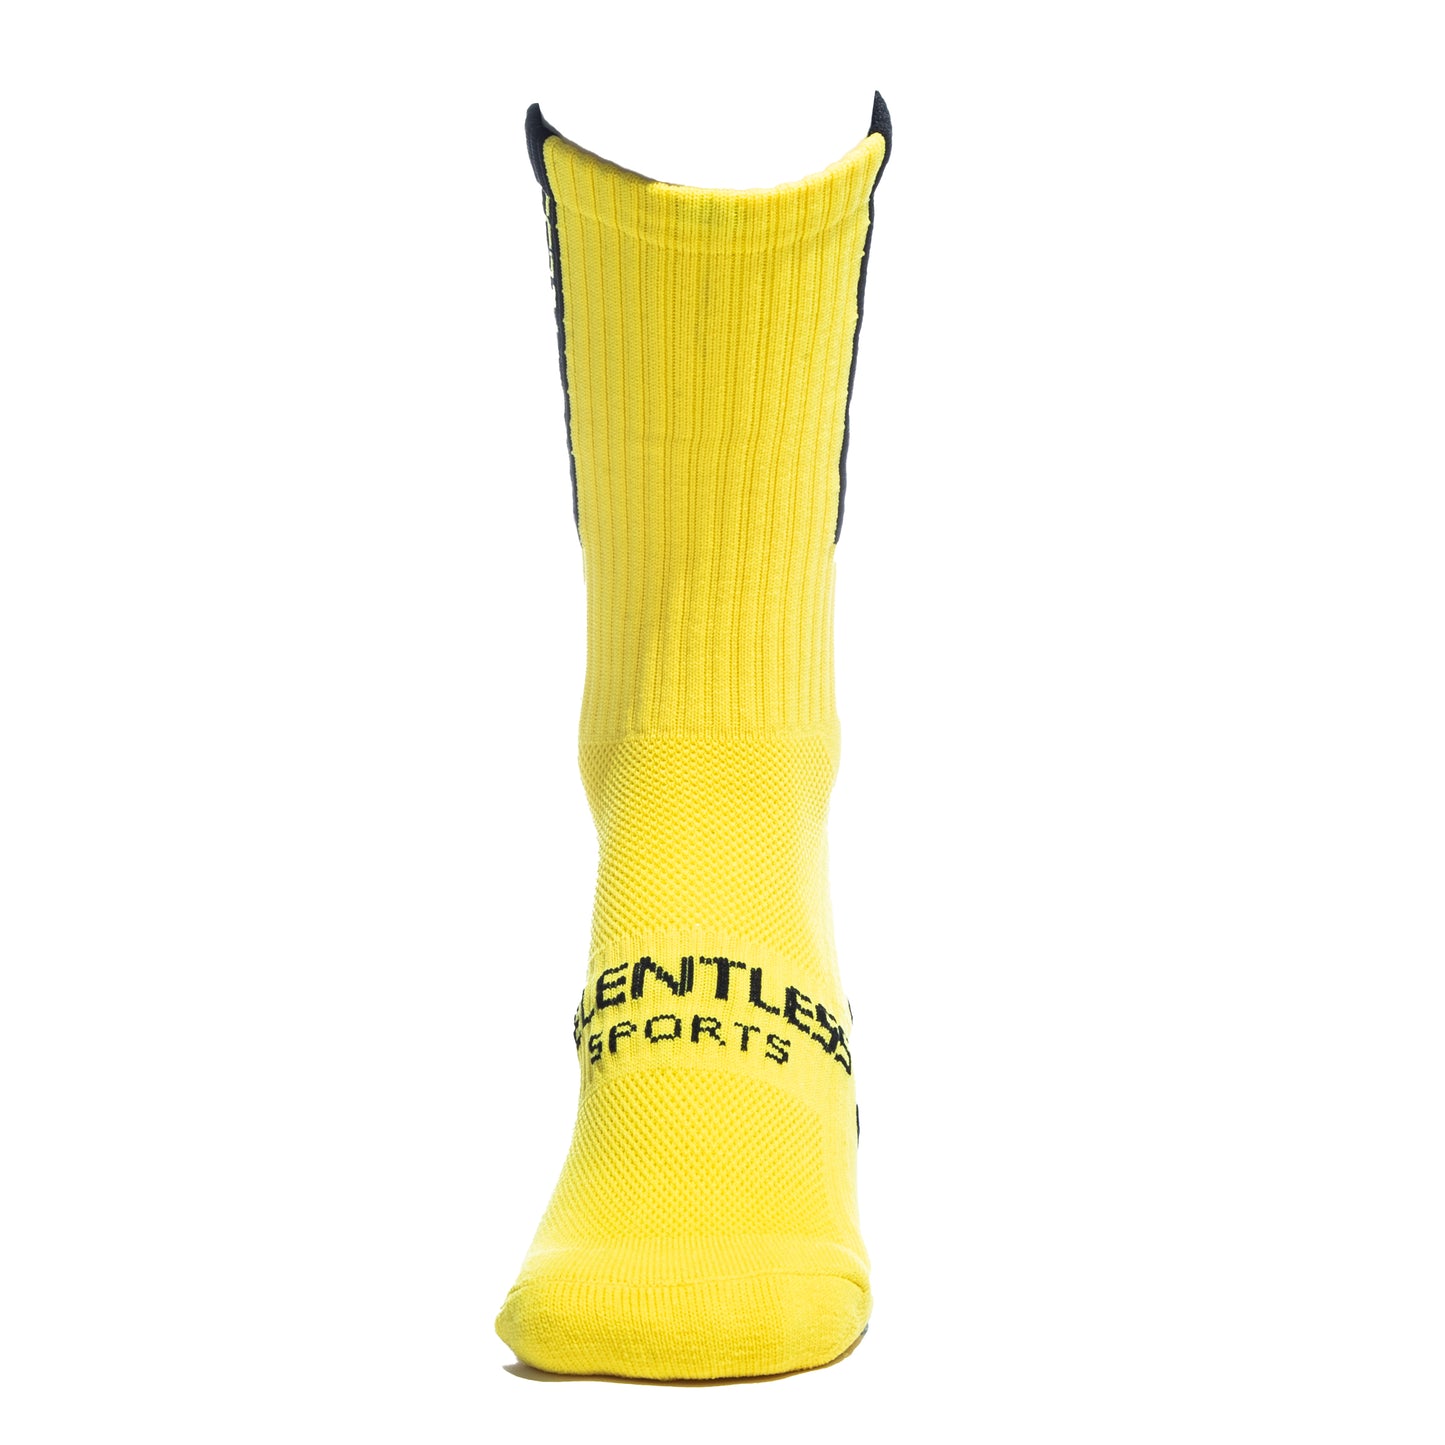 Relentless Grip Sock - Yellow